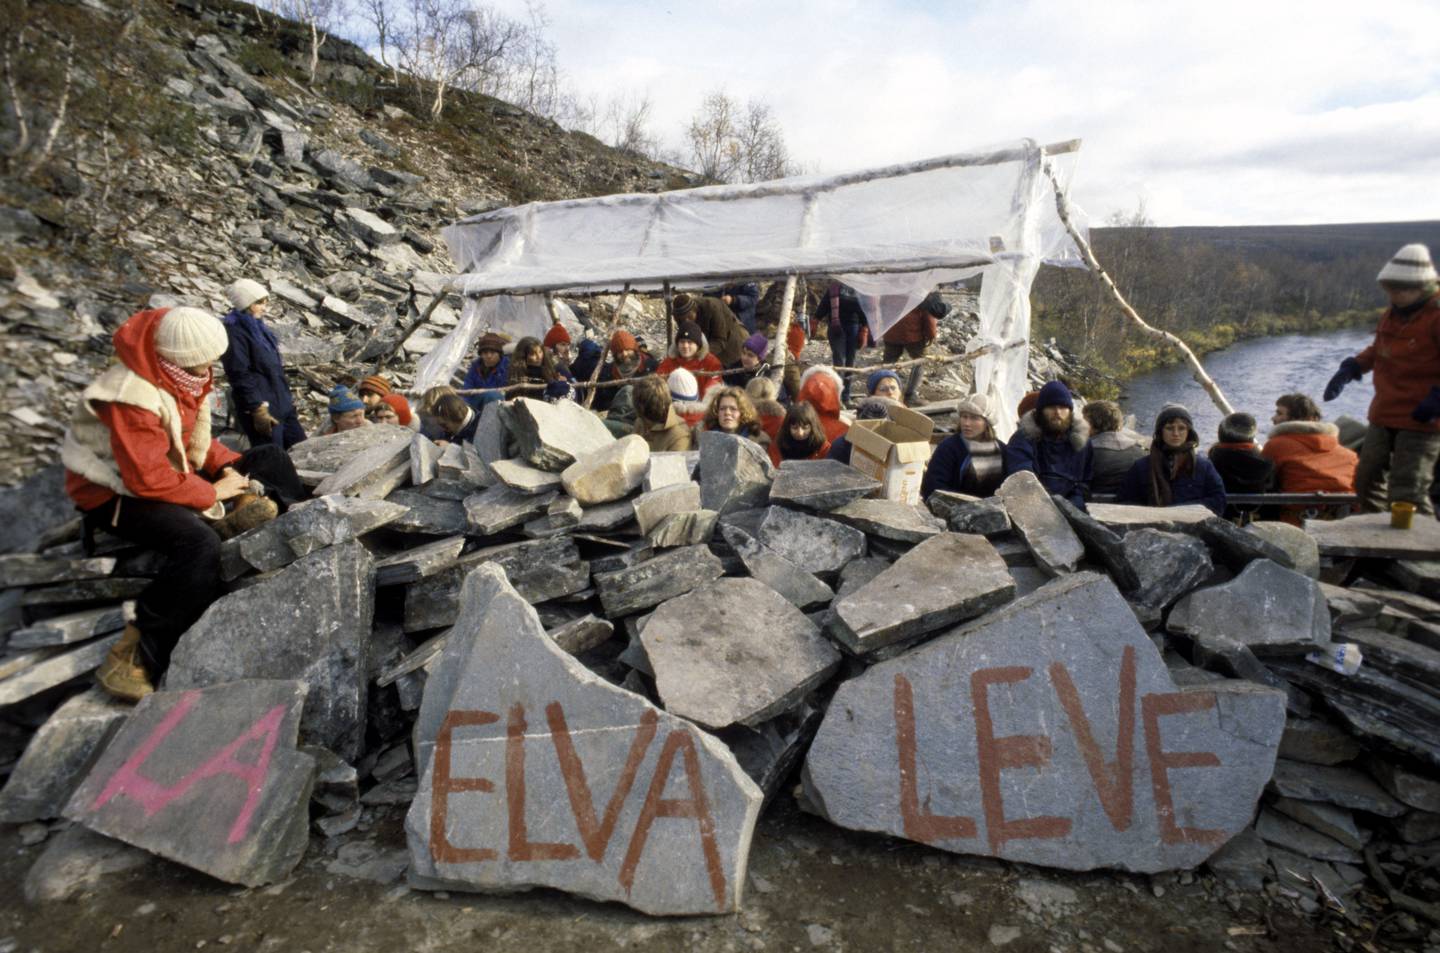 Finnmarksvidda 197910
Demonstrasjon mot utbyggingen av Alta-Kautokeino-vassdraget. Flere hundre mennesker har slått leir ved nullpunktet i Stilla for å hindre anleggsarbeidet  og kraftutbyggingen. Parolen " La elva leve" er malt på steiner.
Foto: Erik Thorberg / NTB